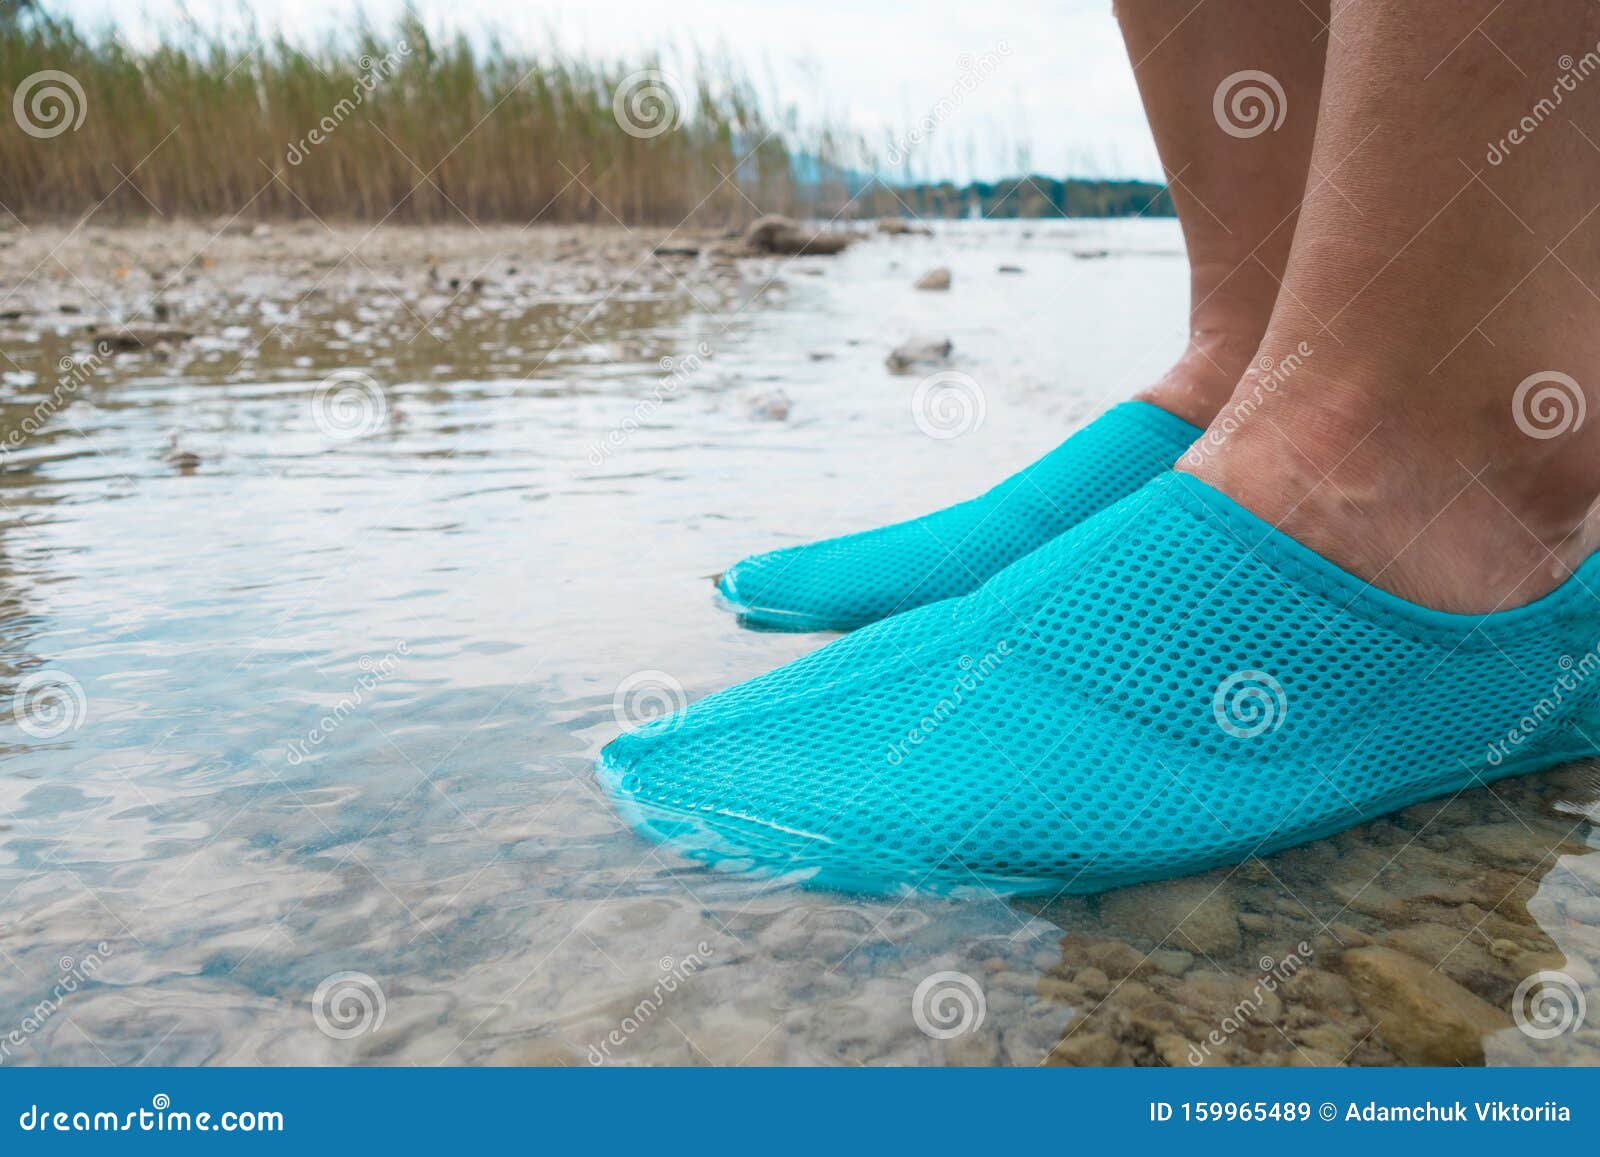 Zapatos De Agua/zapatos Azules De BaÃ±o Sobre Rocas En El En La Playa. Detalle De Los Pies De Una Mujer Que Usa Zap Imagen de archivo - Imagen de playa,